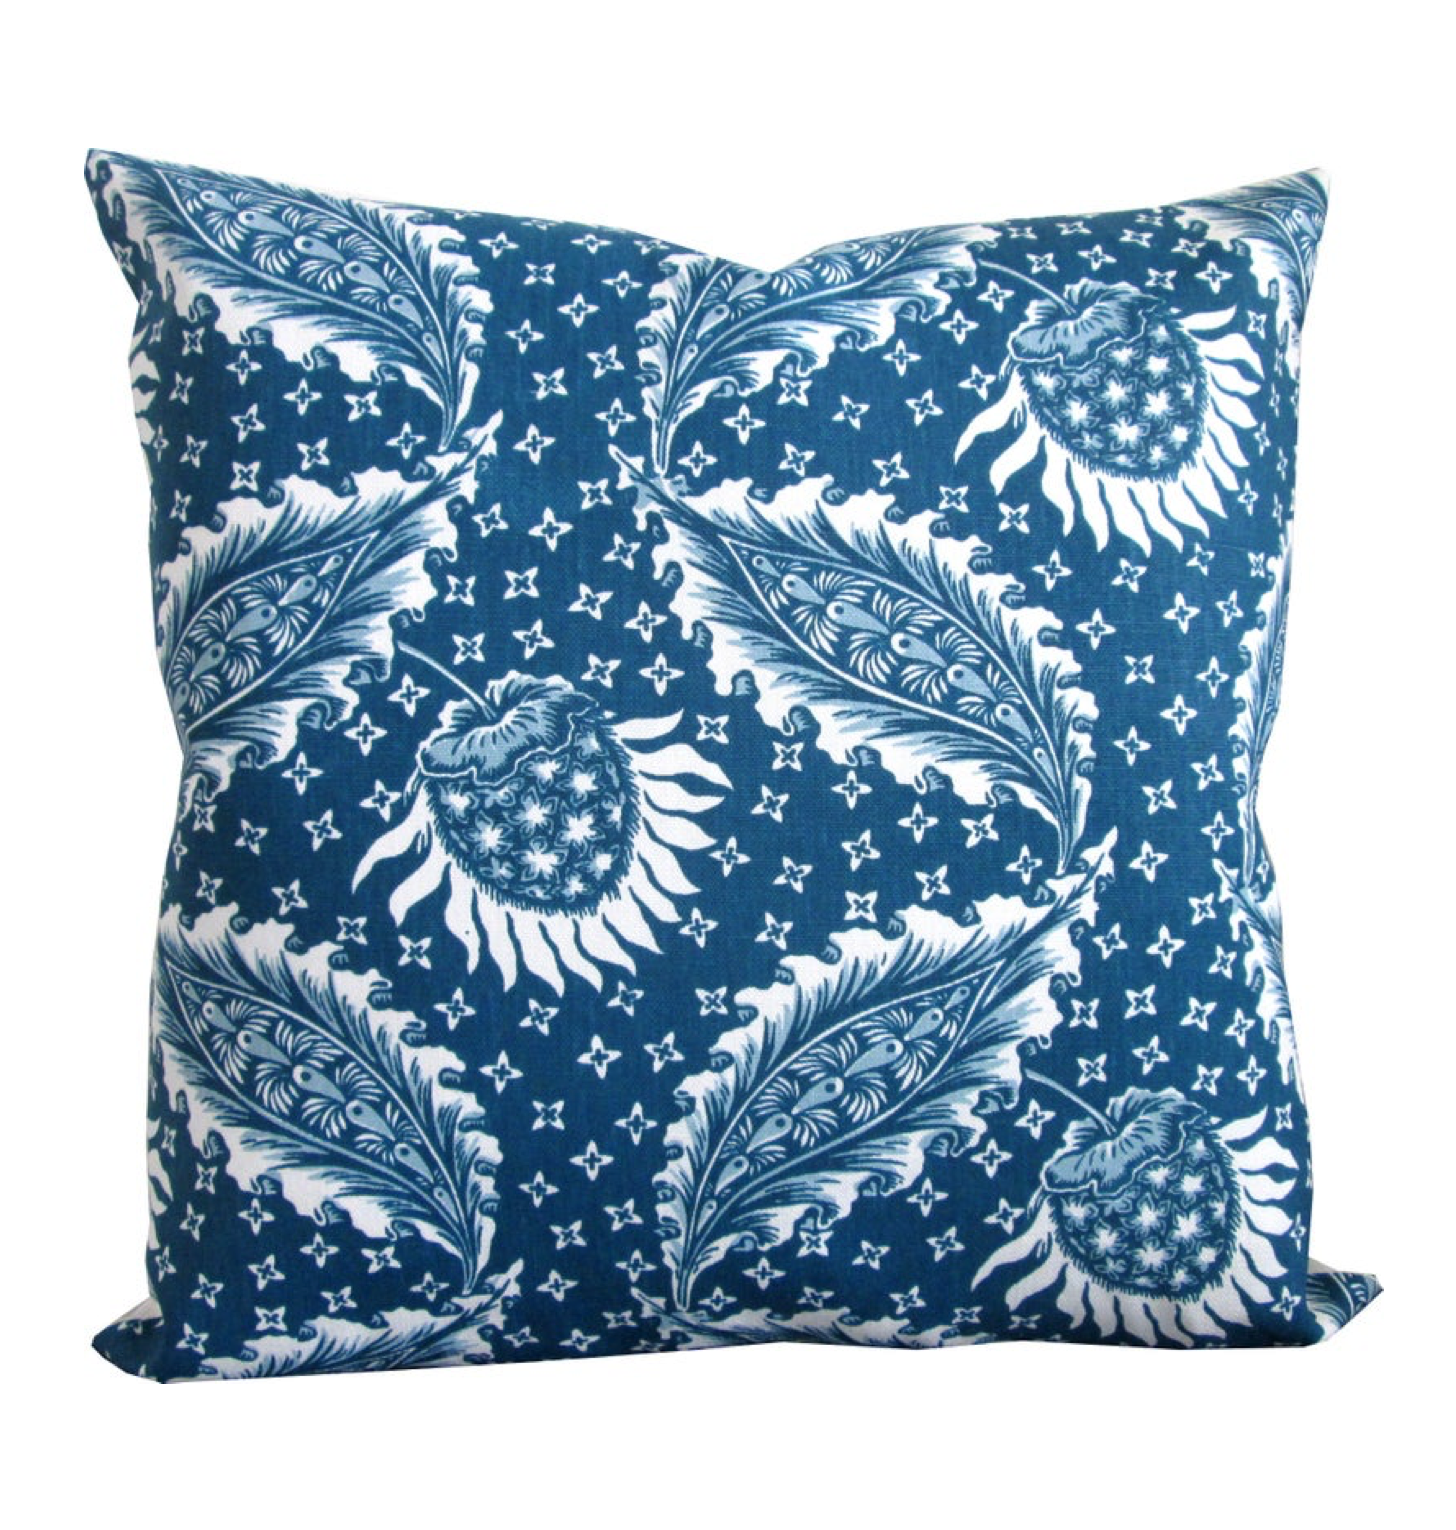 Blue Decorative Pillow